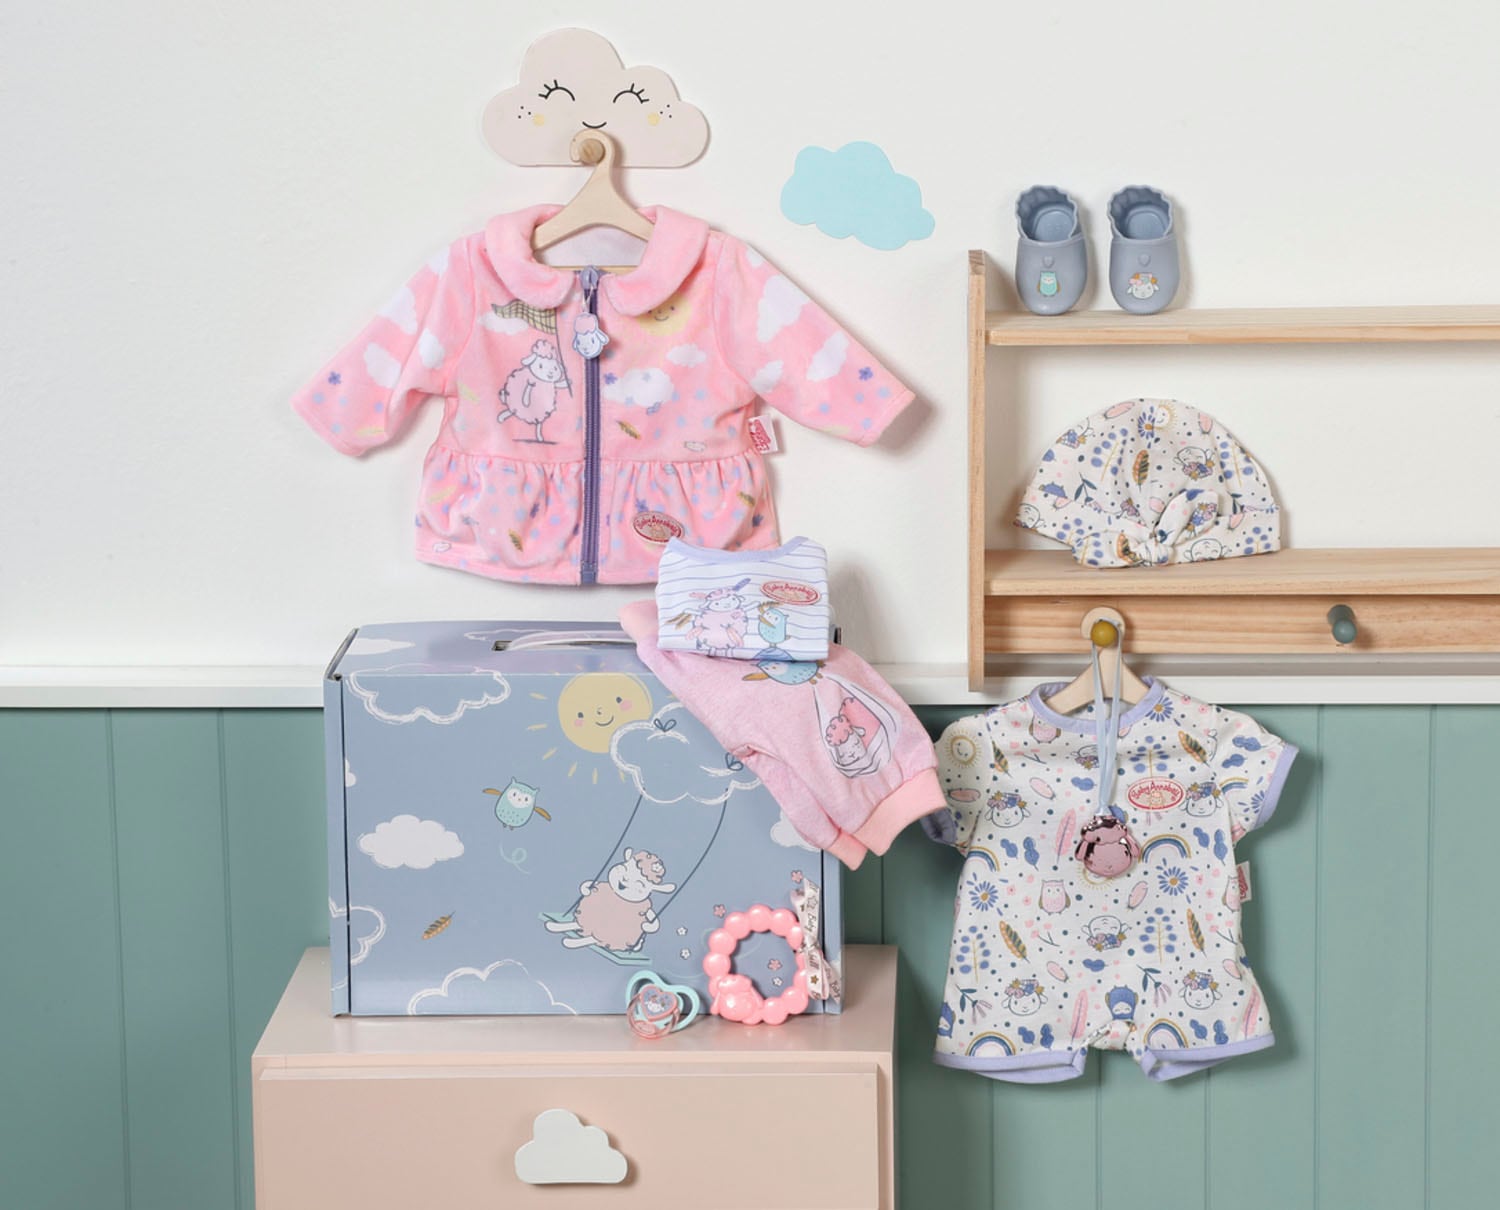 Baby Annabell Puppen Koffer »Erstausstattungs-Koffer«